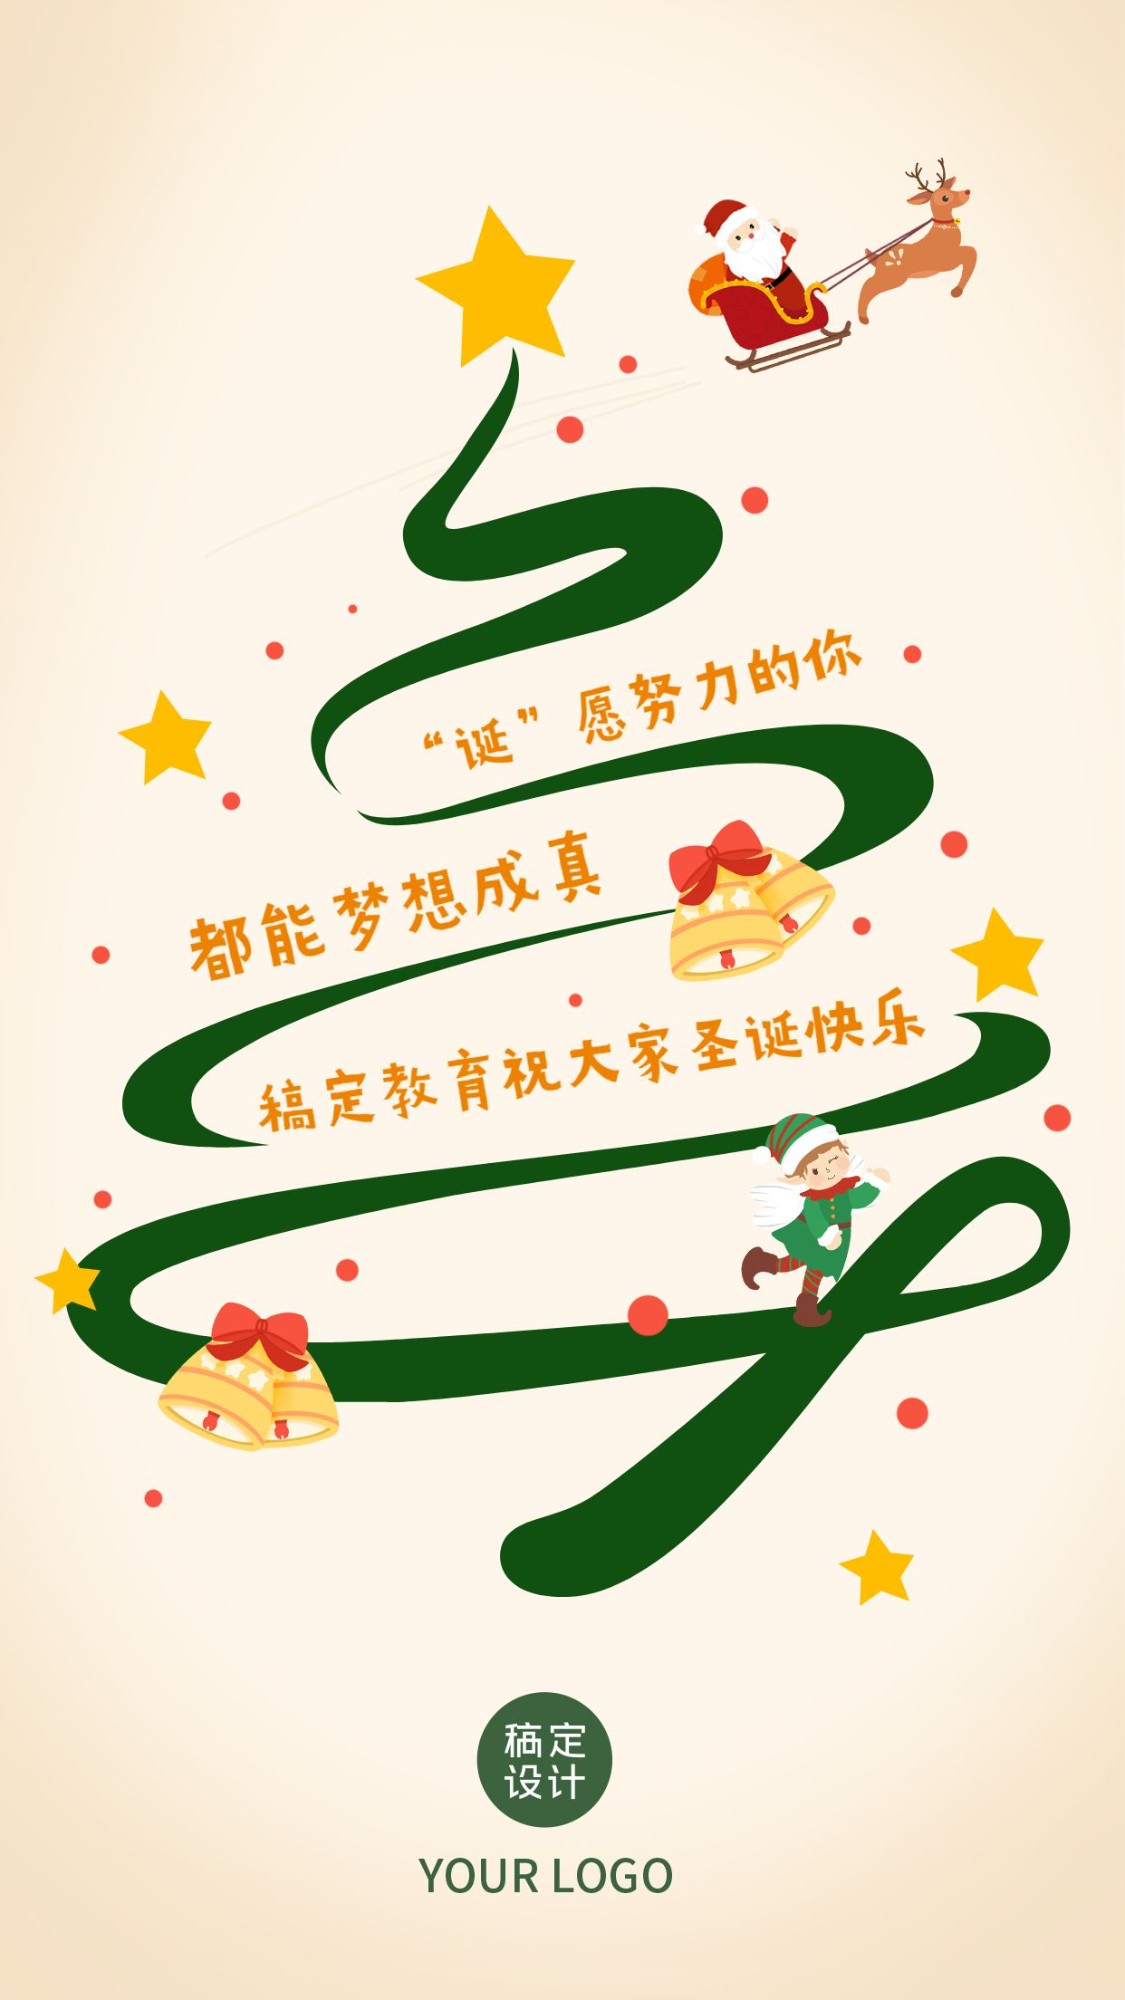 圣诞节平安夜机构祝福贺卡打工人的圣诞树海报预览效果